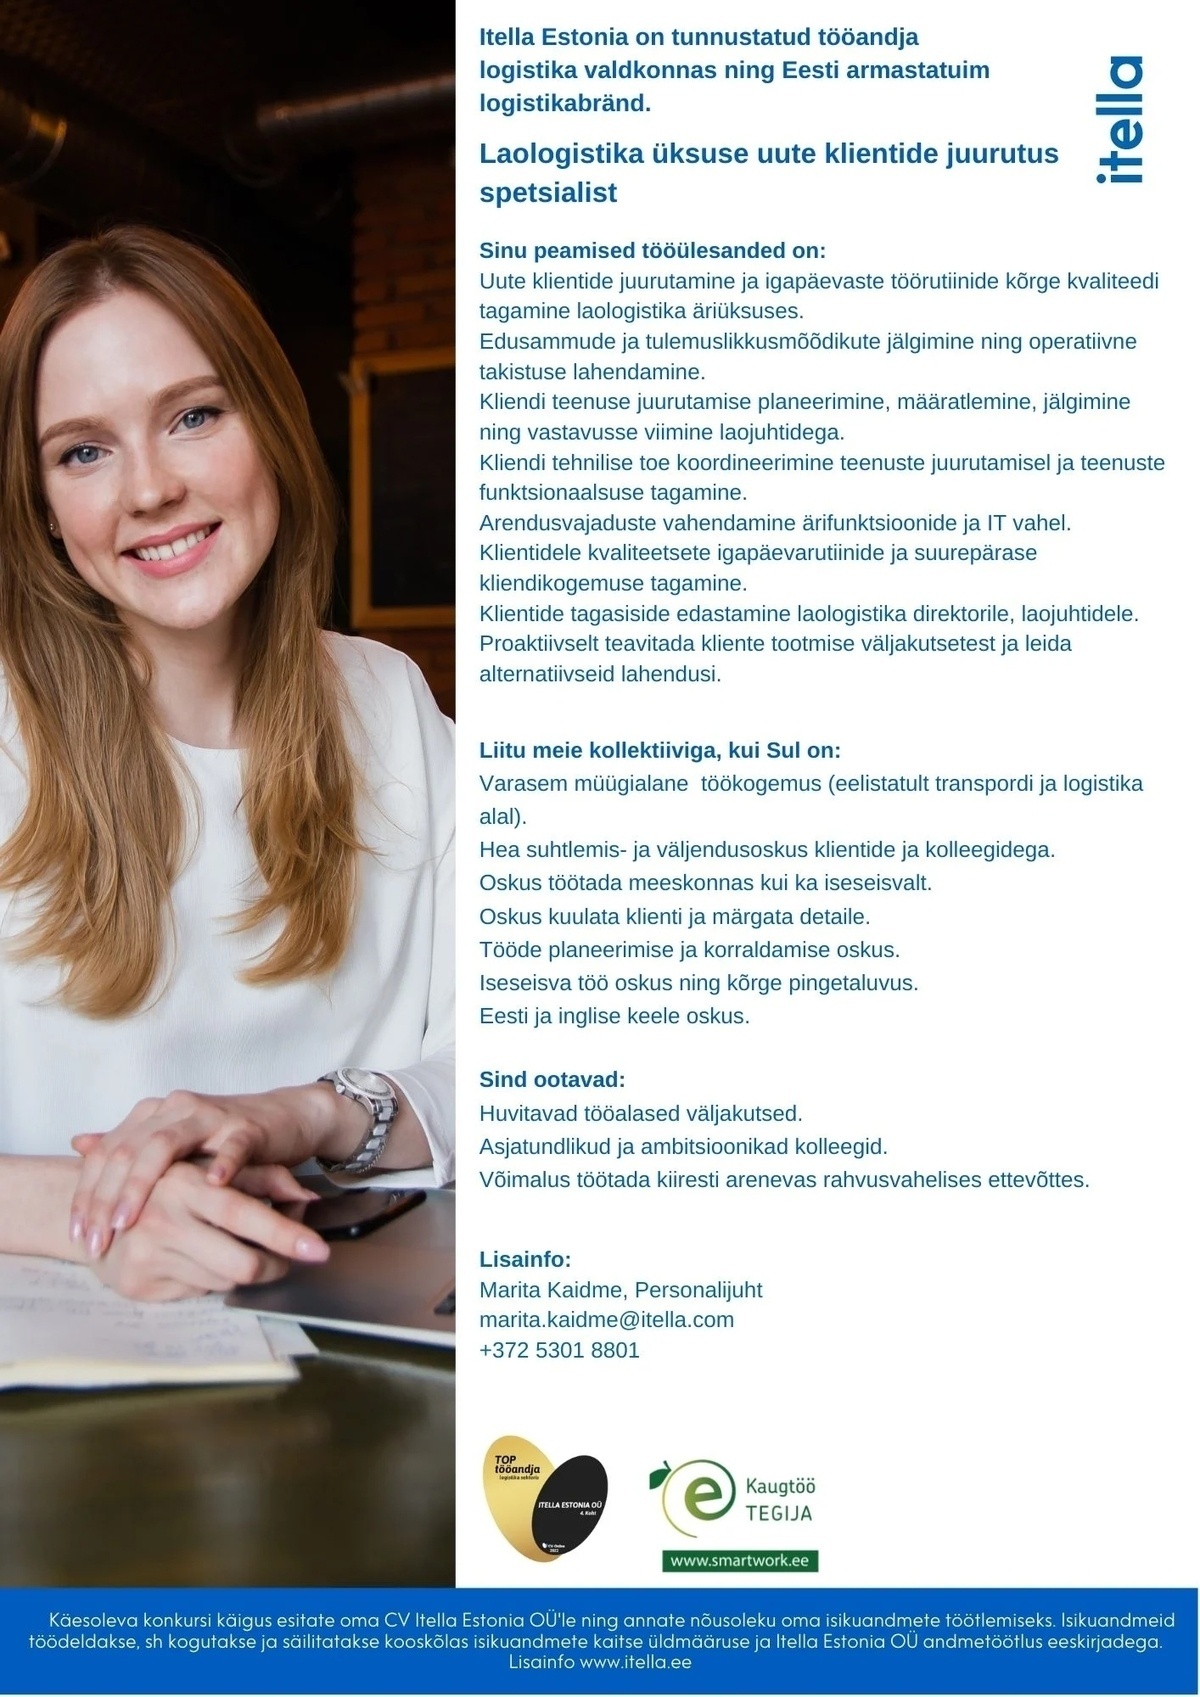 Itella Estonia OÜ Laologistika üksuse uute klientide juurutus spetsialist